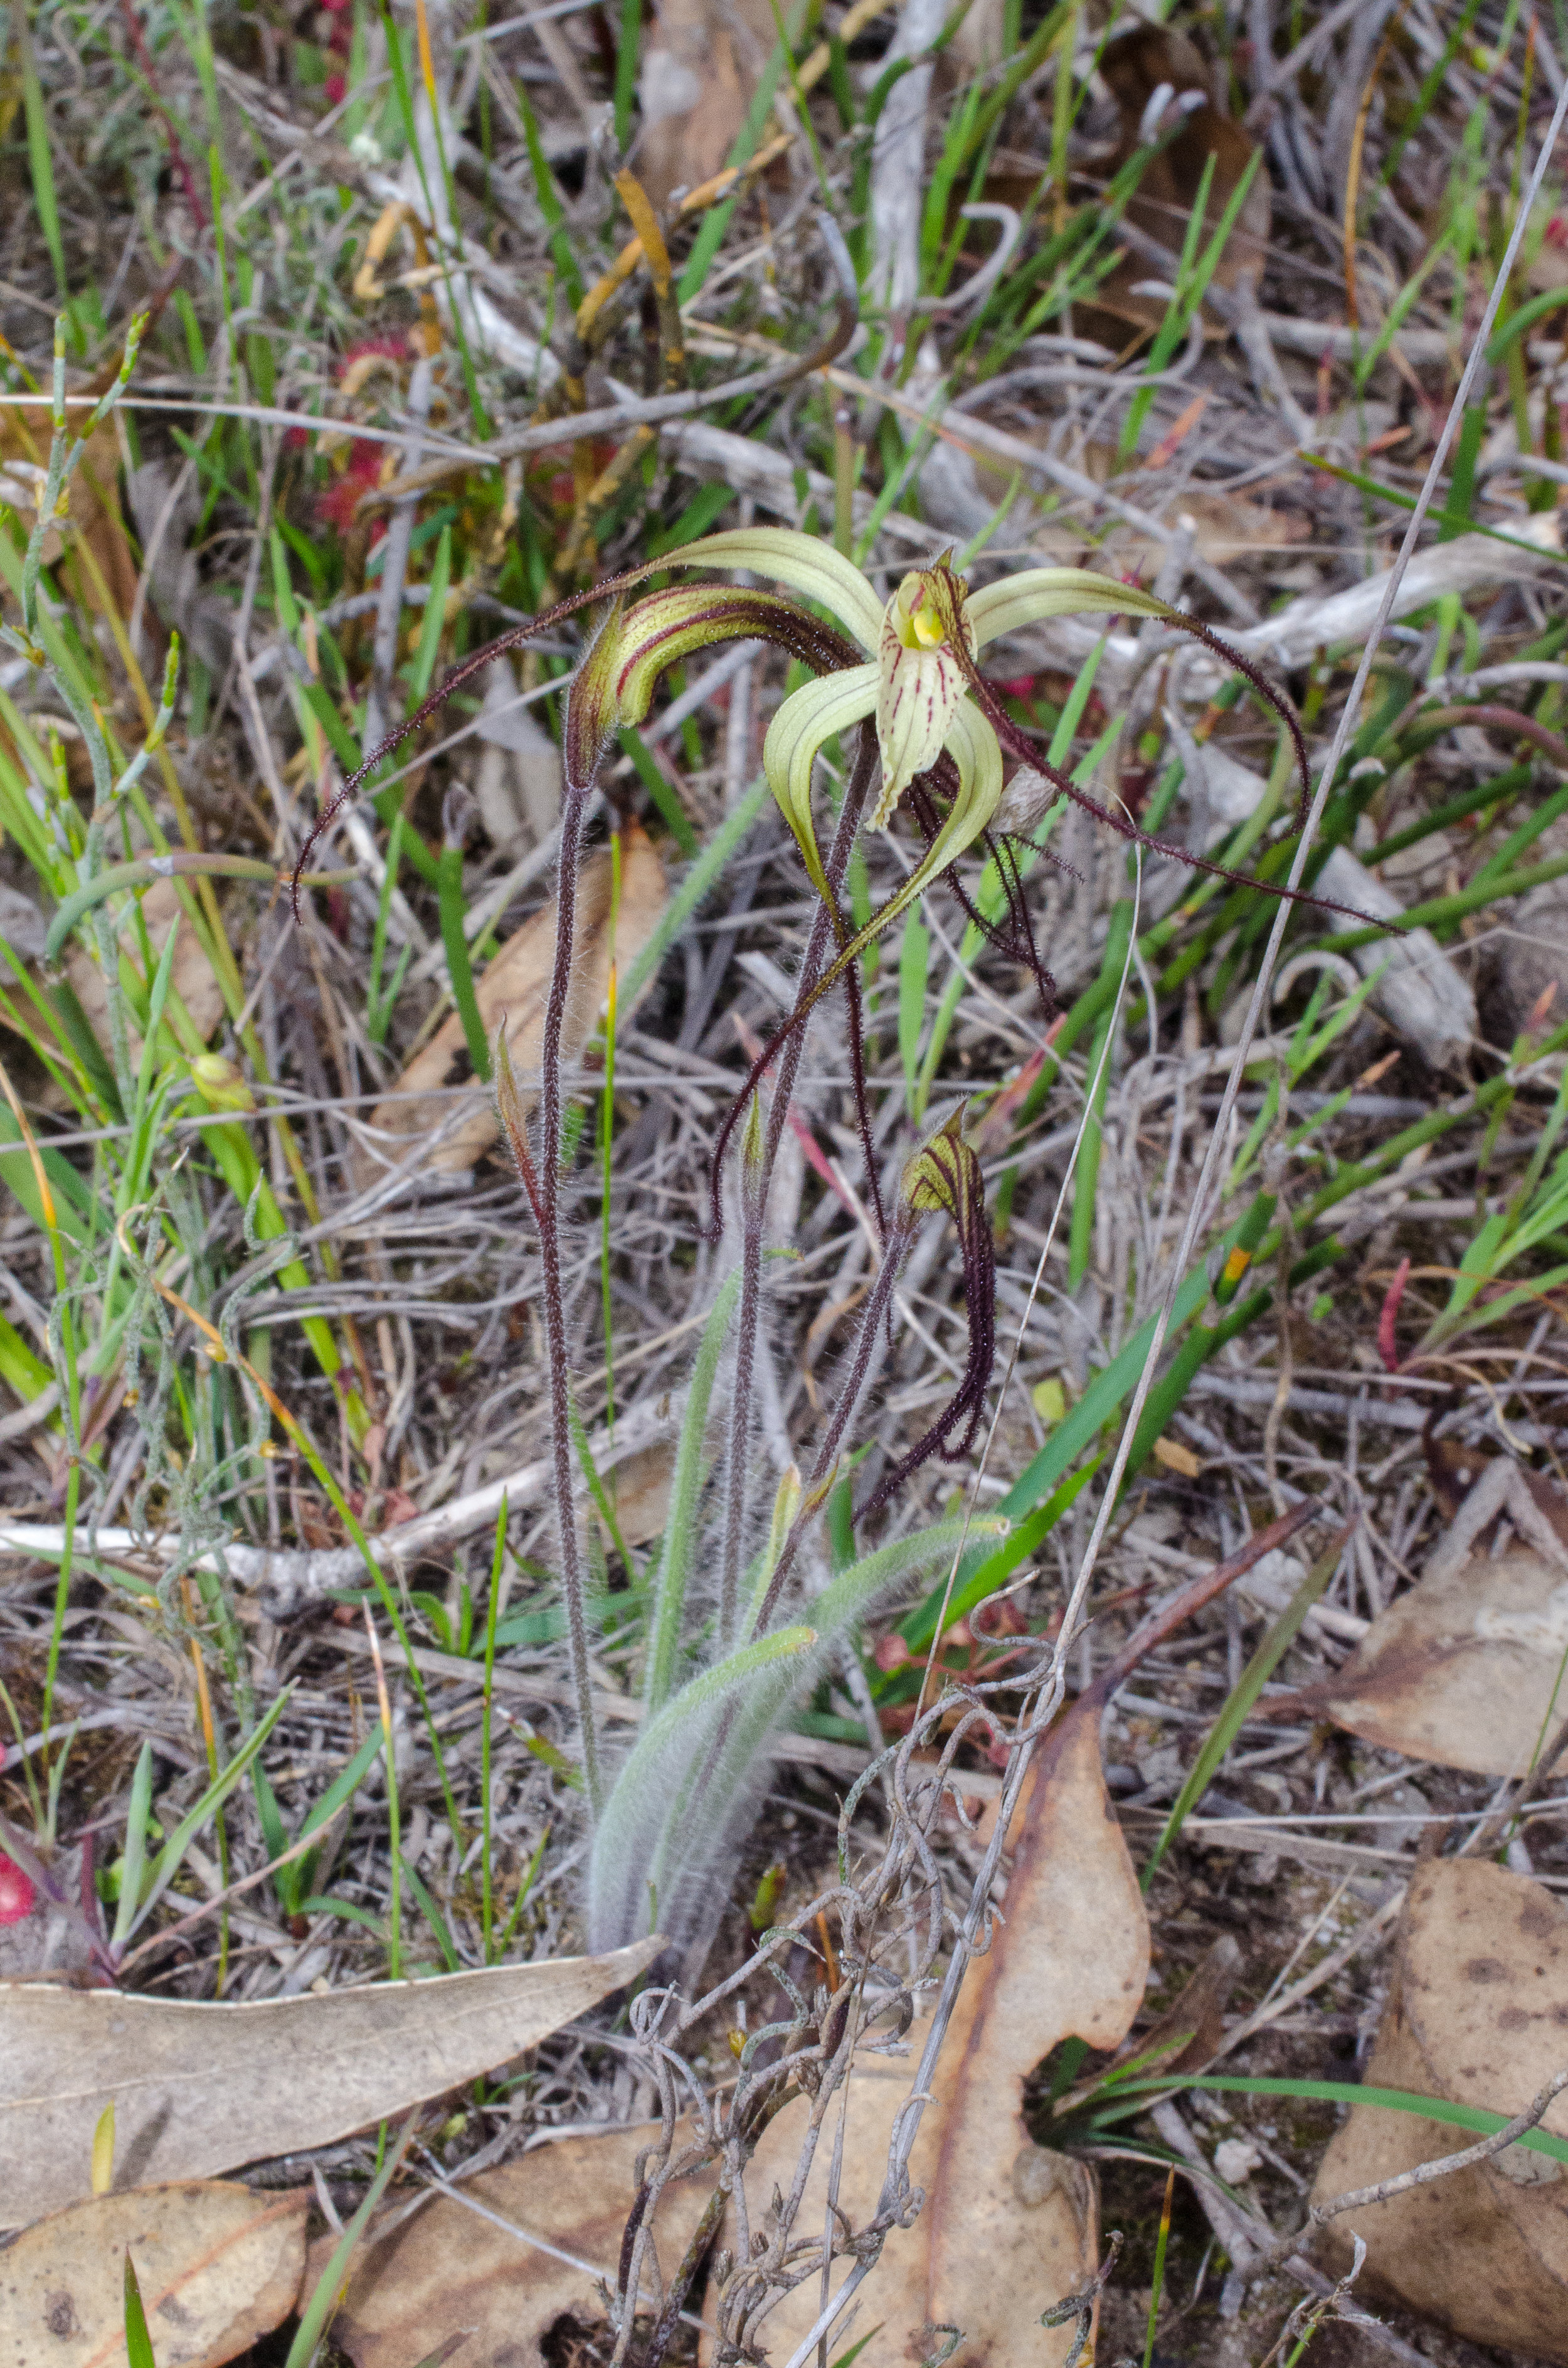  Caladenia evanescens - Semaphore Spider Orchid, Tenterden 